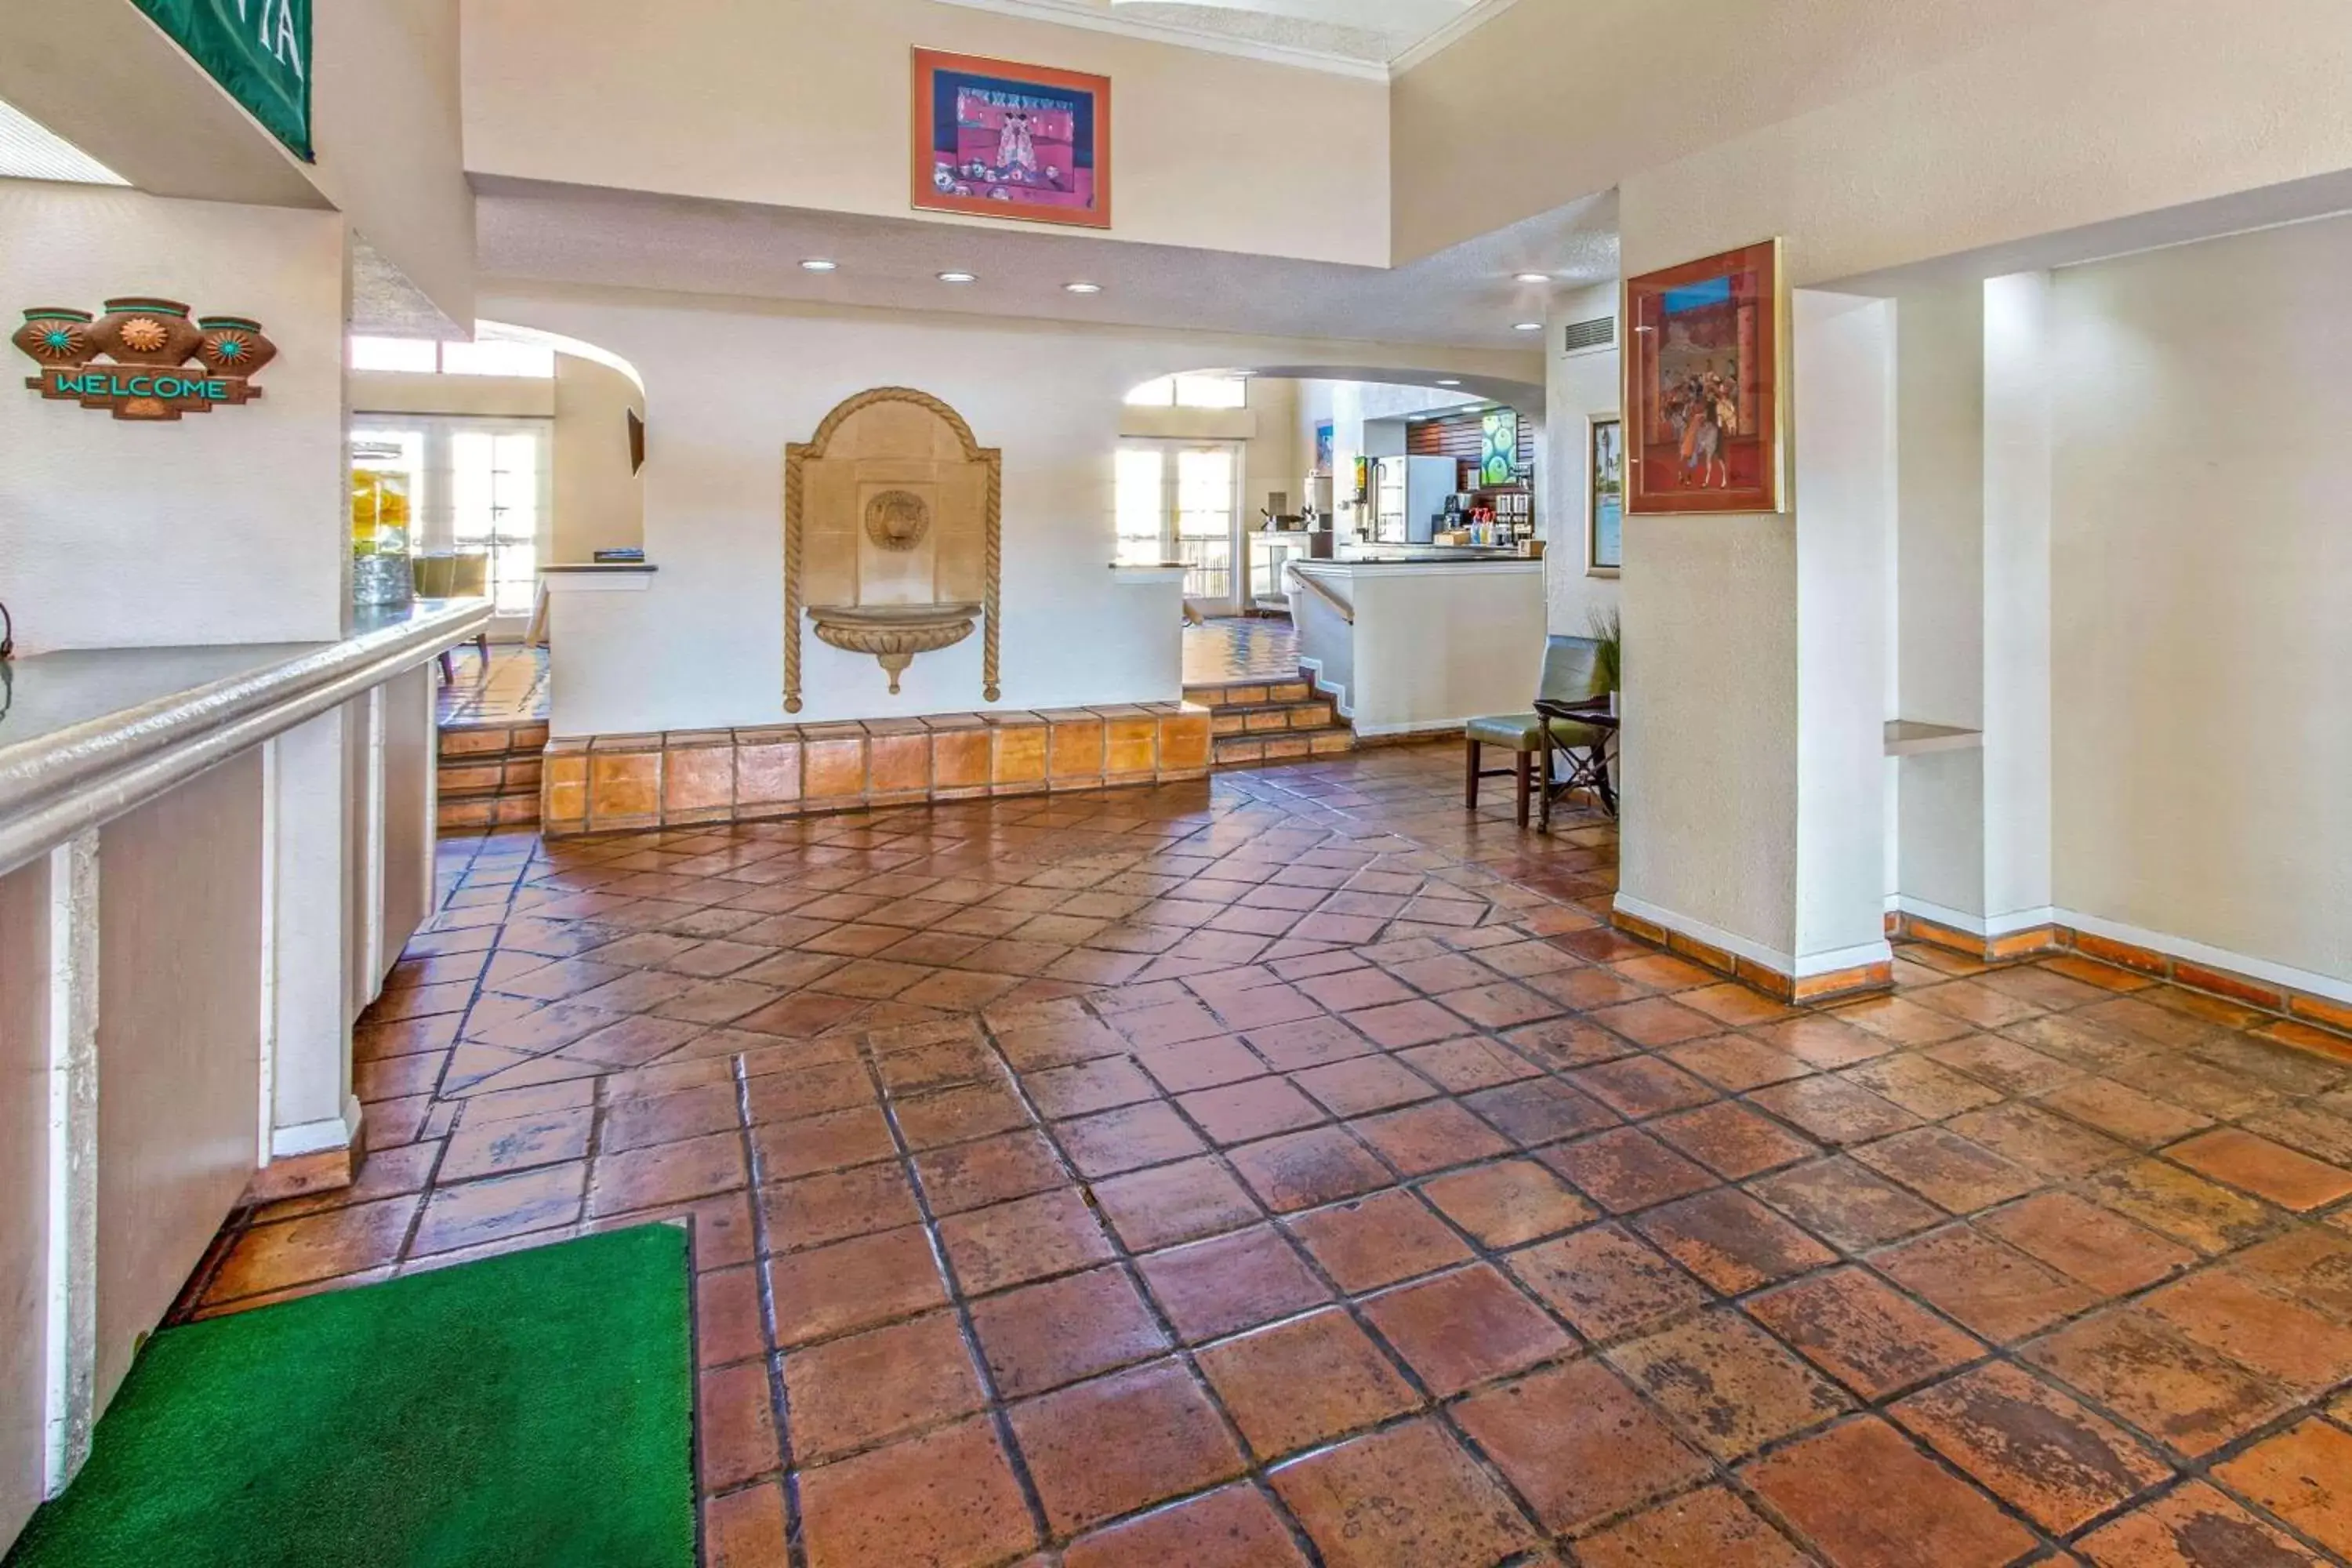 Lobby or reception, Lobby/Reception in La Quinta Inn by Wyndham Las Cruces Mesilla Valley